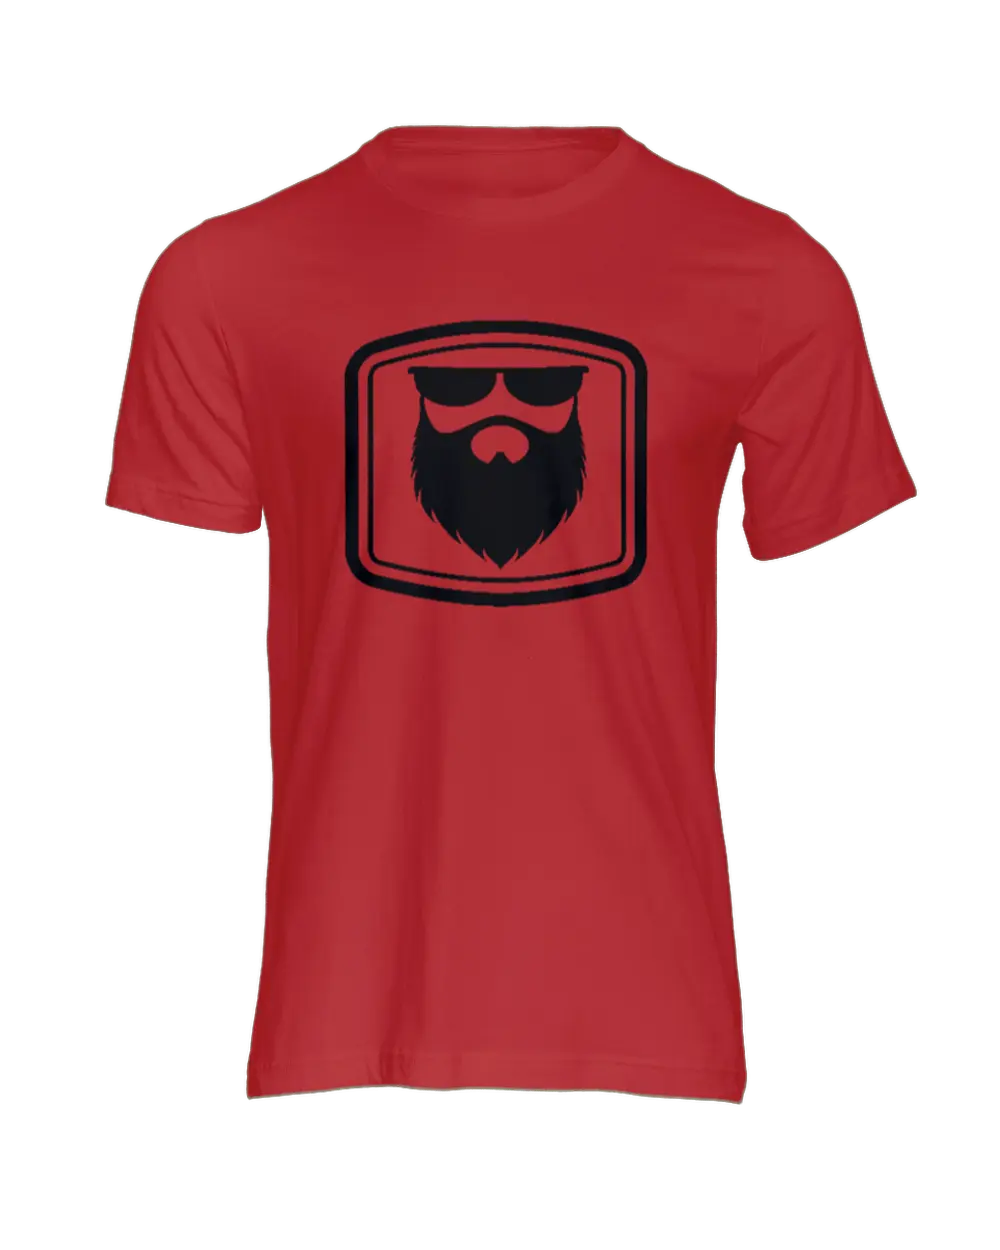 THE OG BEARD 2.0 Red Men's T-Shirt